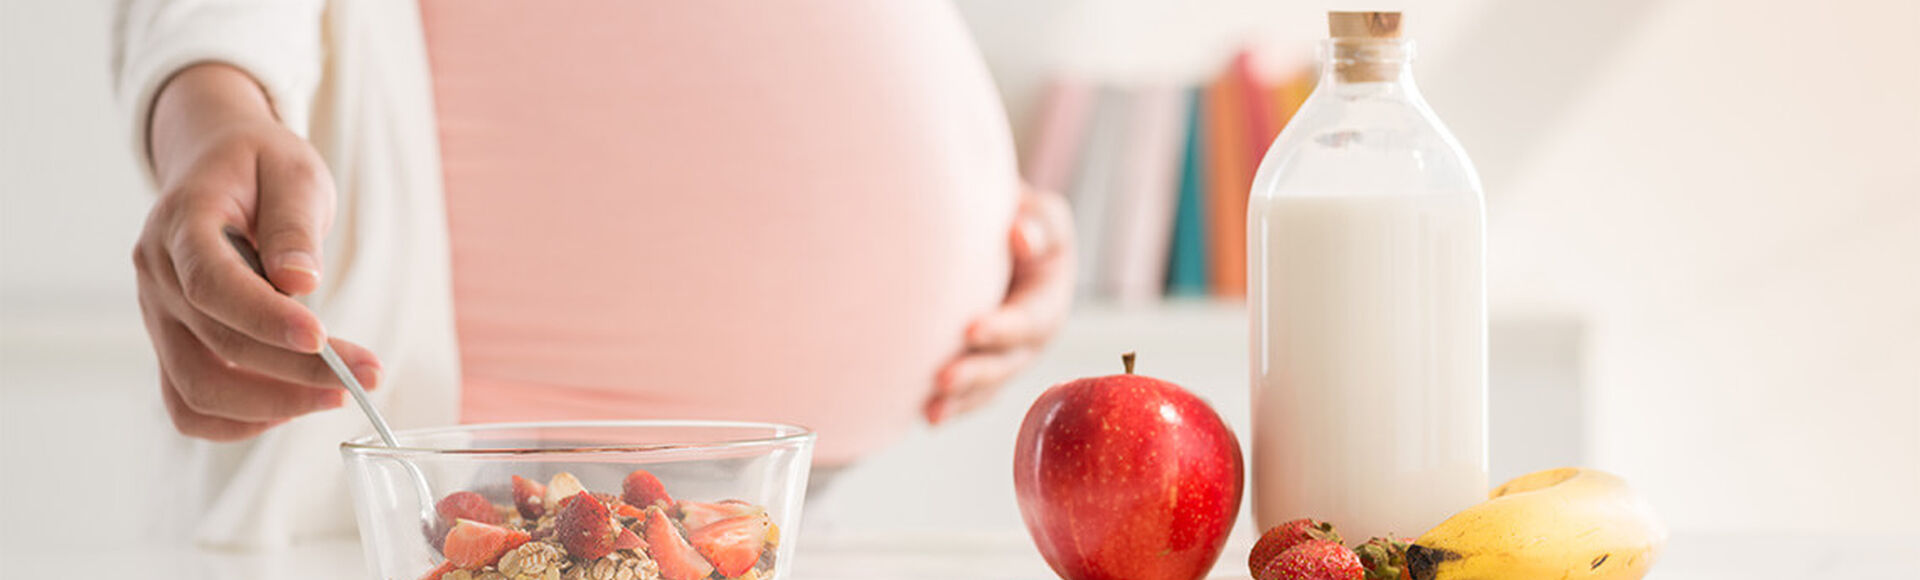 Alimentos recomendados para embarazadas | Más Abrazos by Huggies